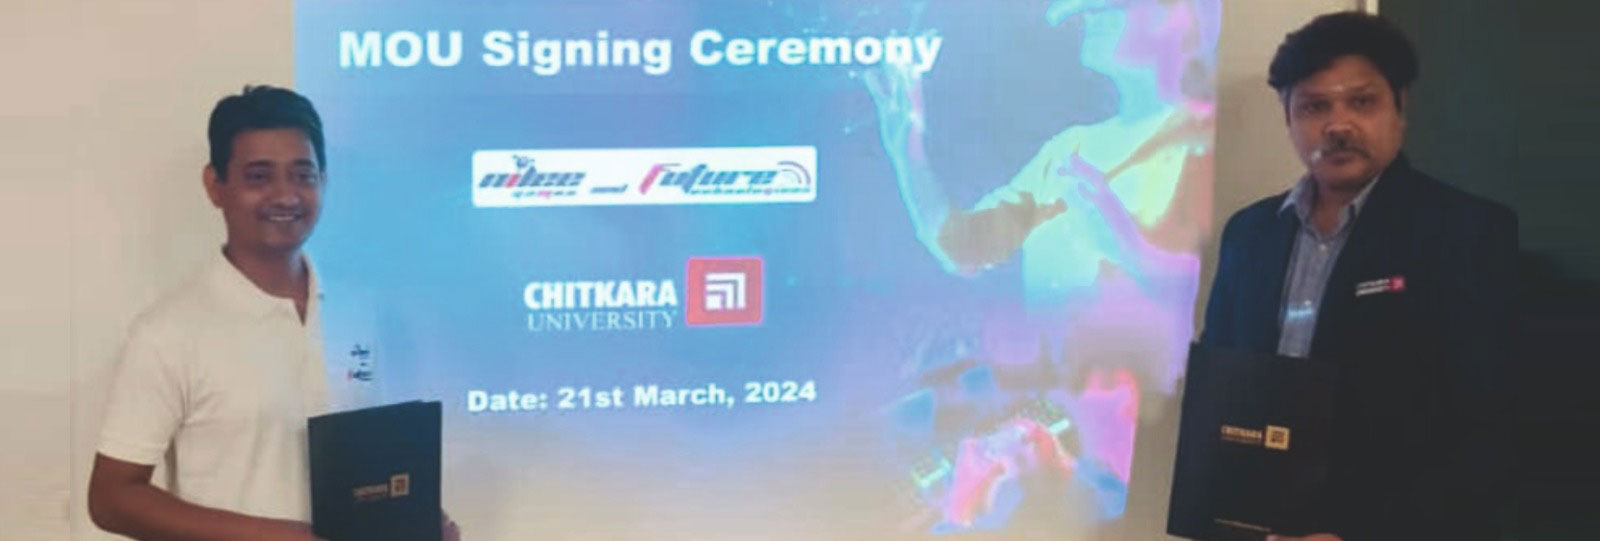 Gaming Innovation - Chitkara University